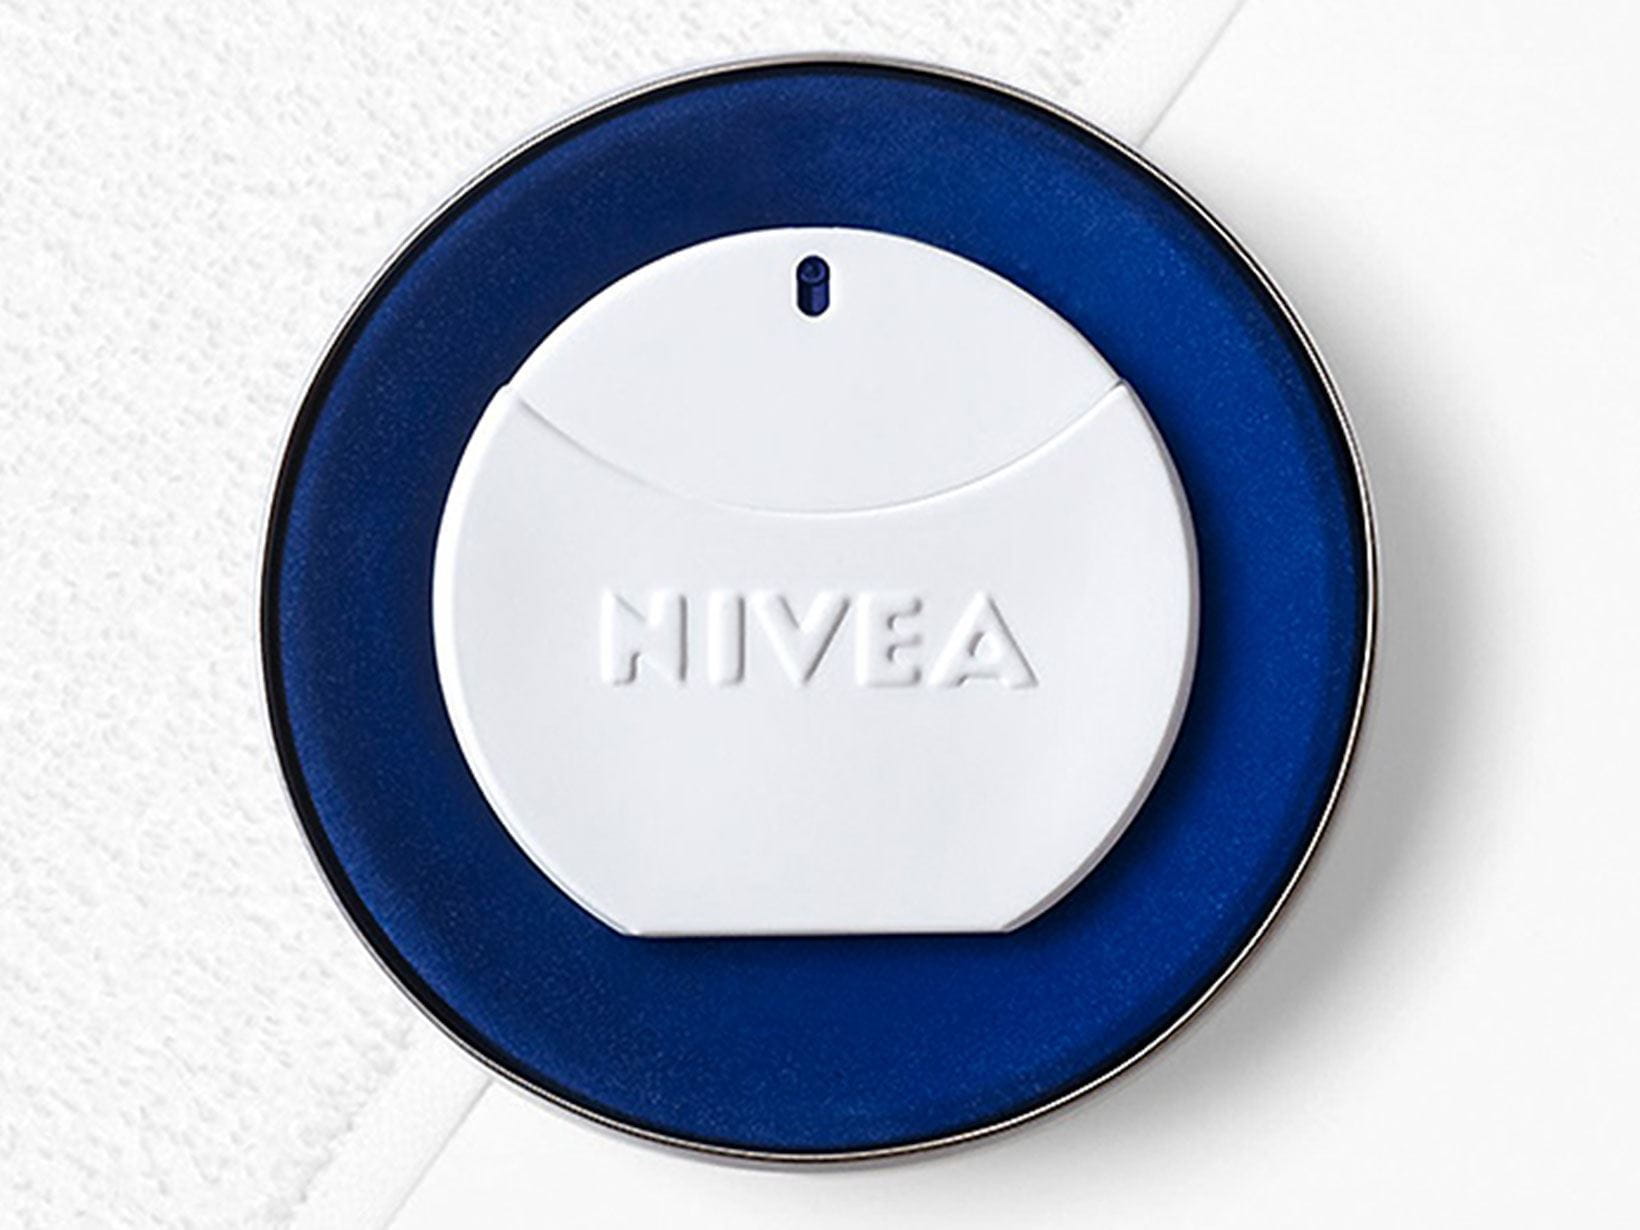 La senteur mystérieuse de NIVEA évoque fraîcheur et sécurité.